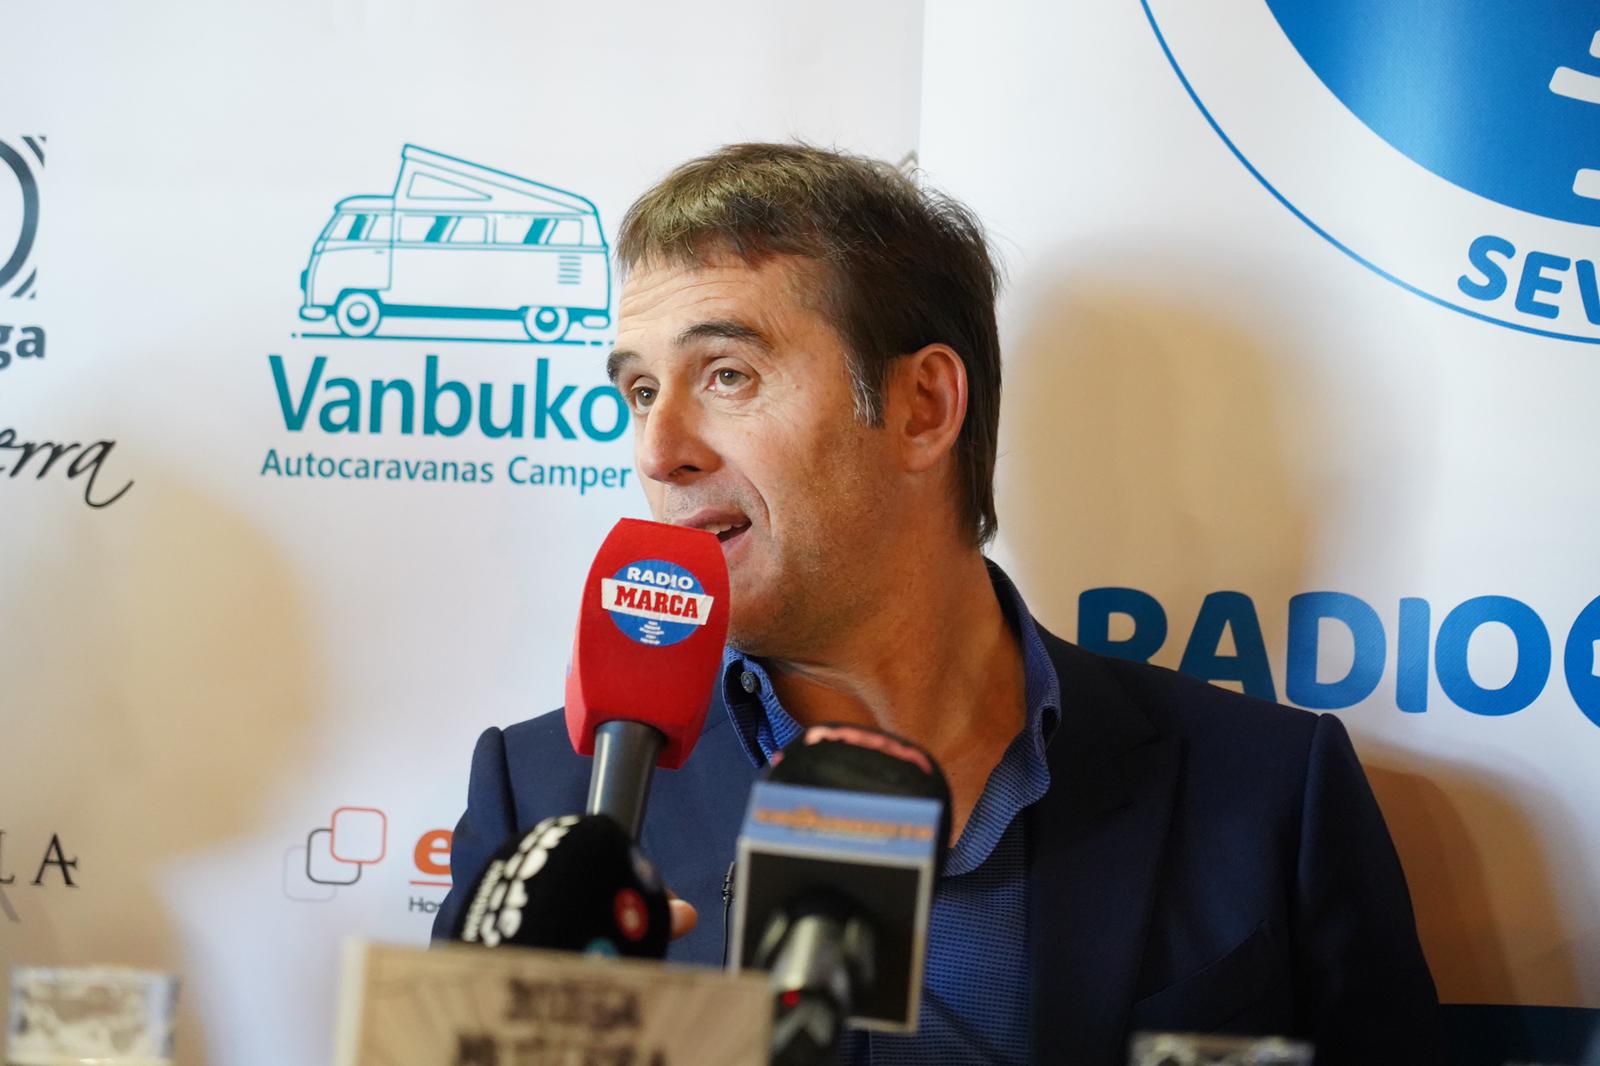 Julen Lopetegui on the Radio Marca Sevilla talk show